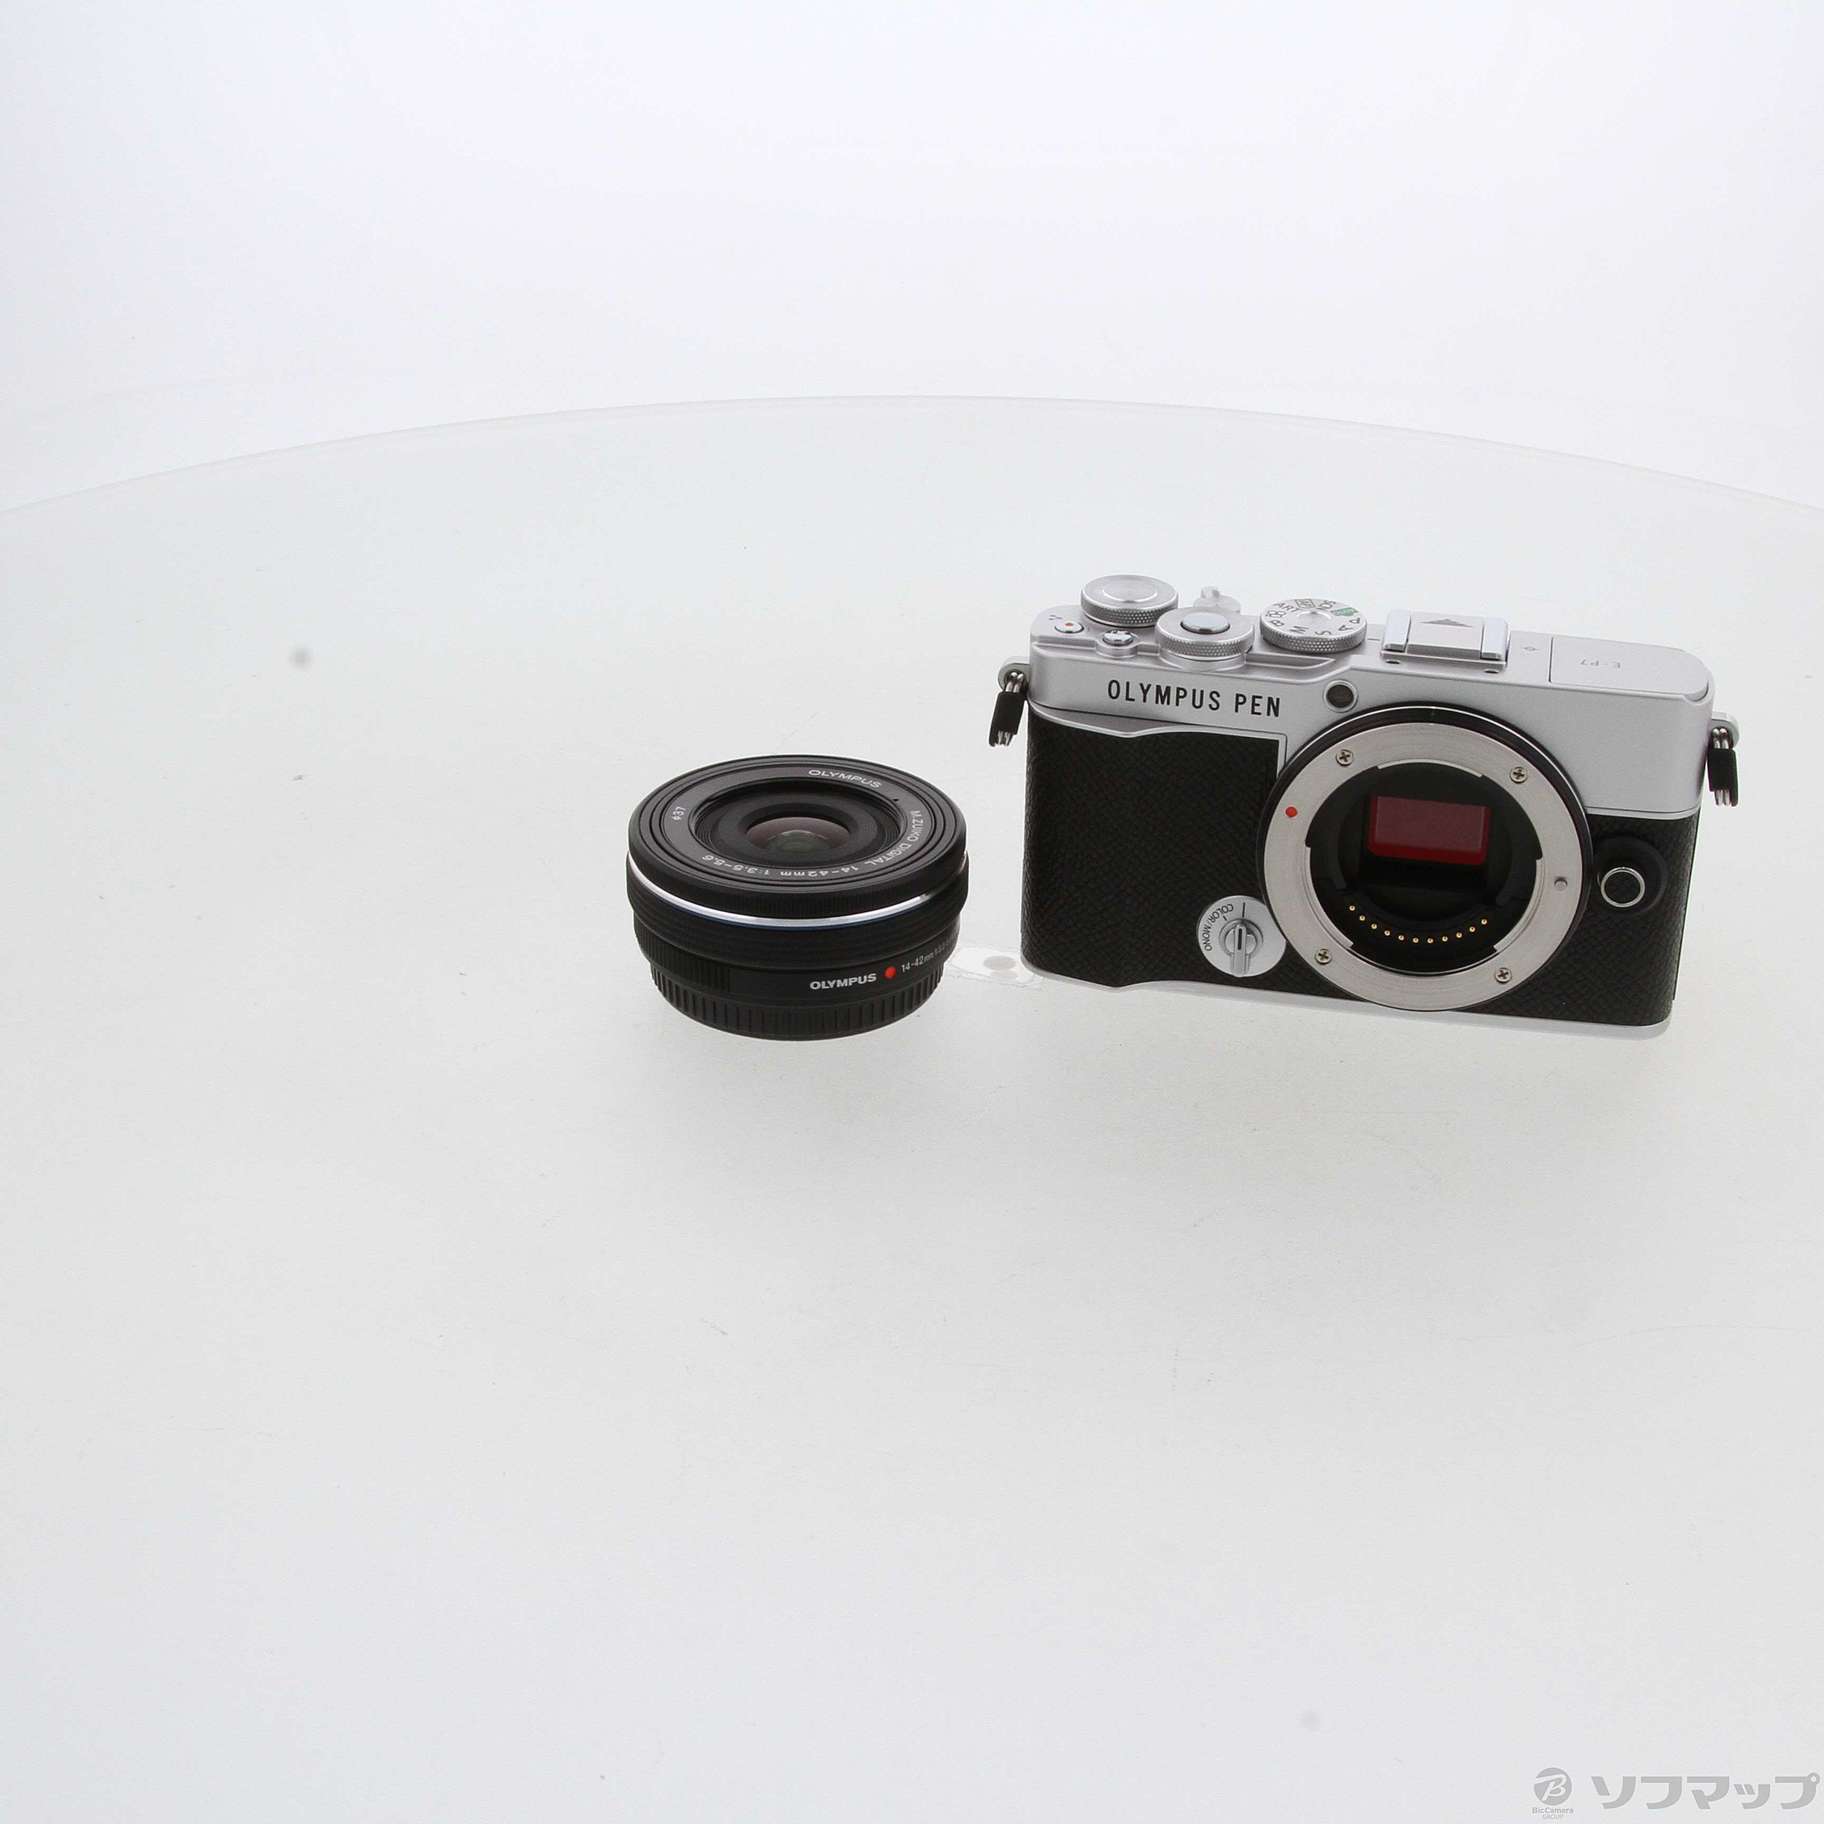 激安買い取り OLYMPUS PEN E-P7 14-42mm EZレンズキット シルバー デジタルカメラ